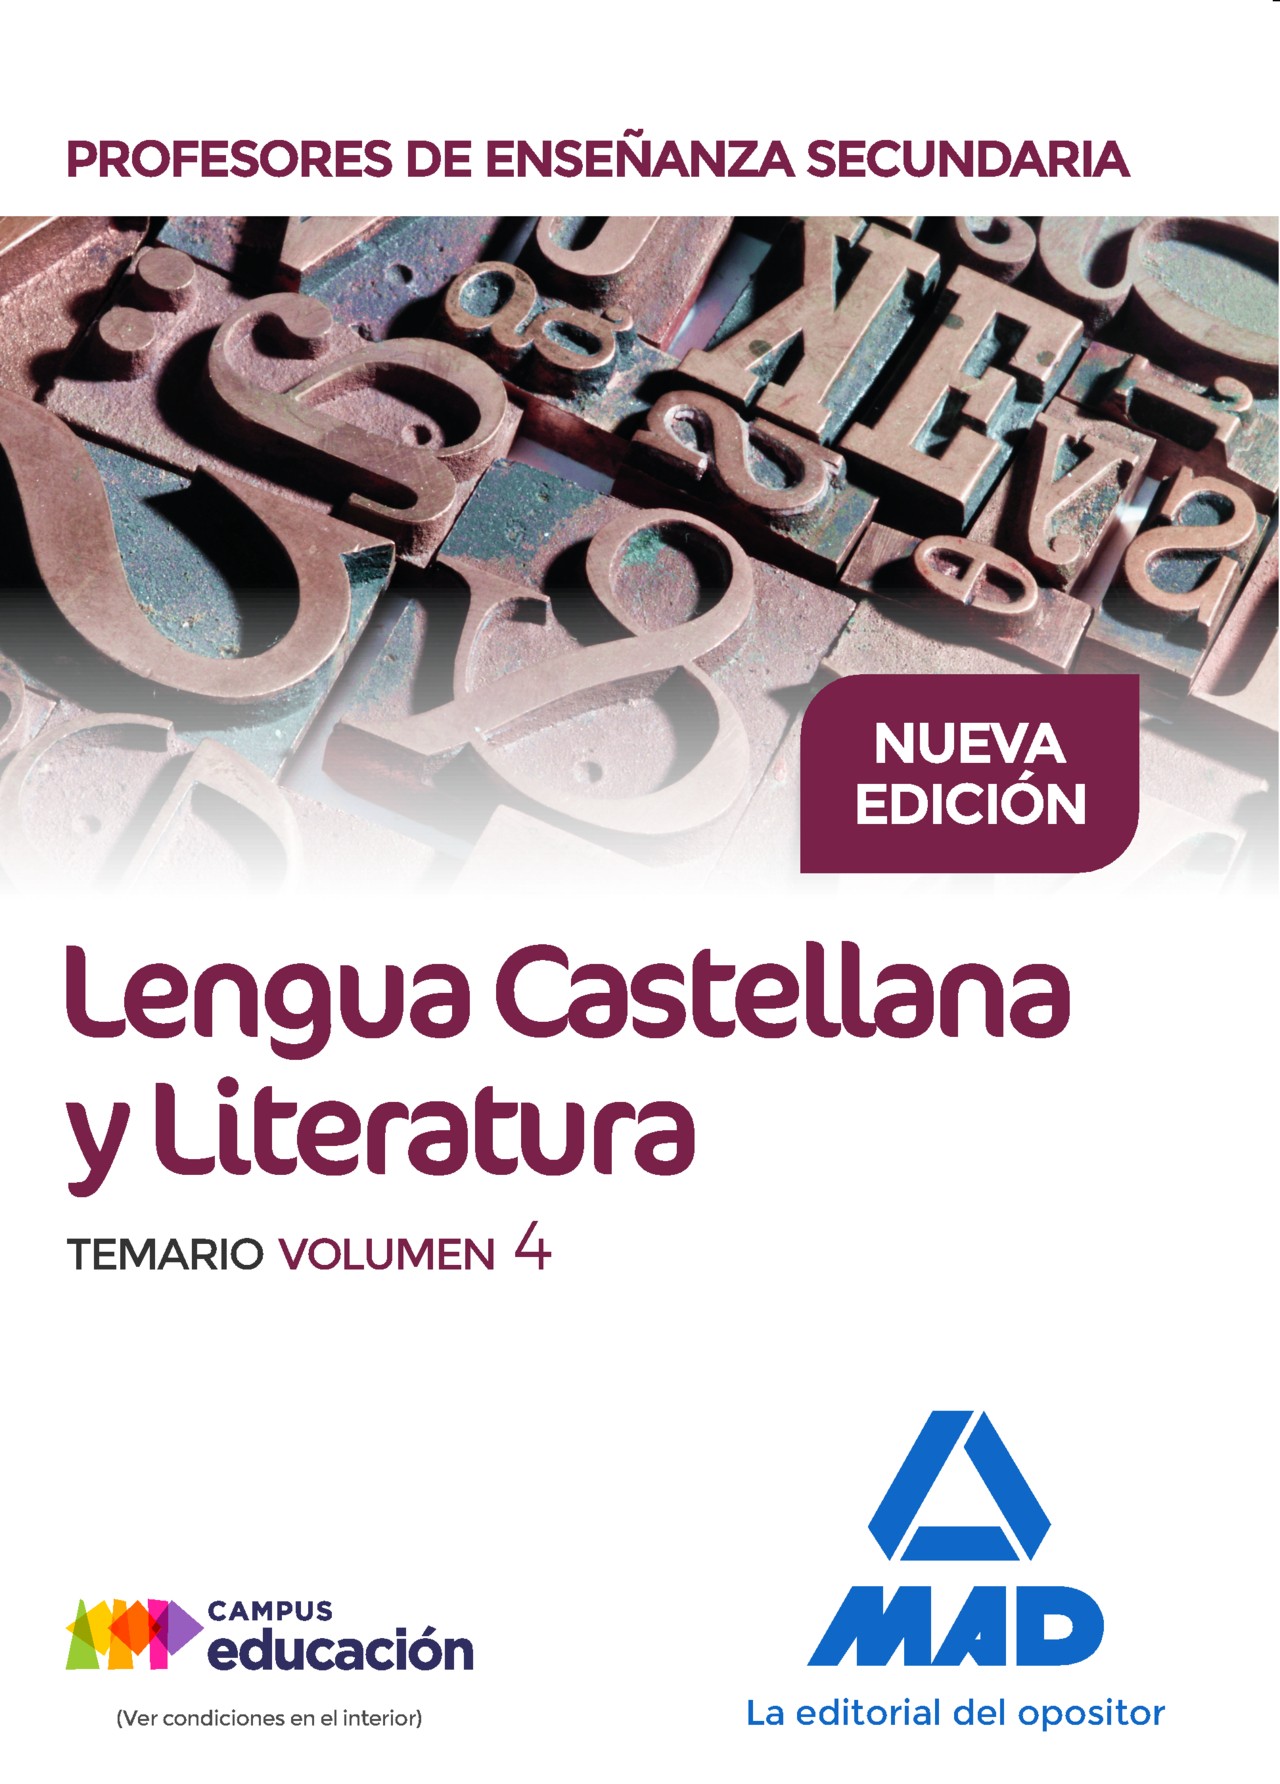 Mierda agenda en cualquier momento Lengua Castellana y Literatura. Profesores de Secundaria. Temario Volumen 4